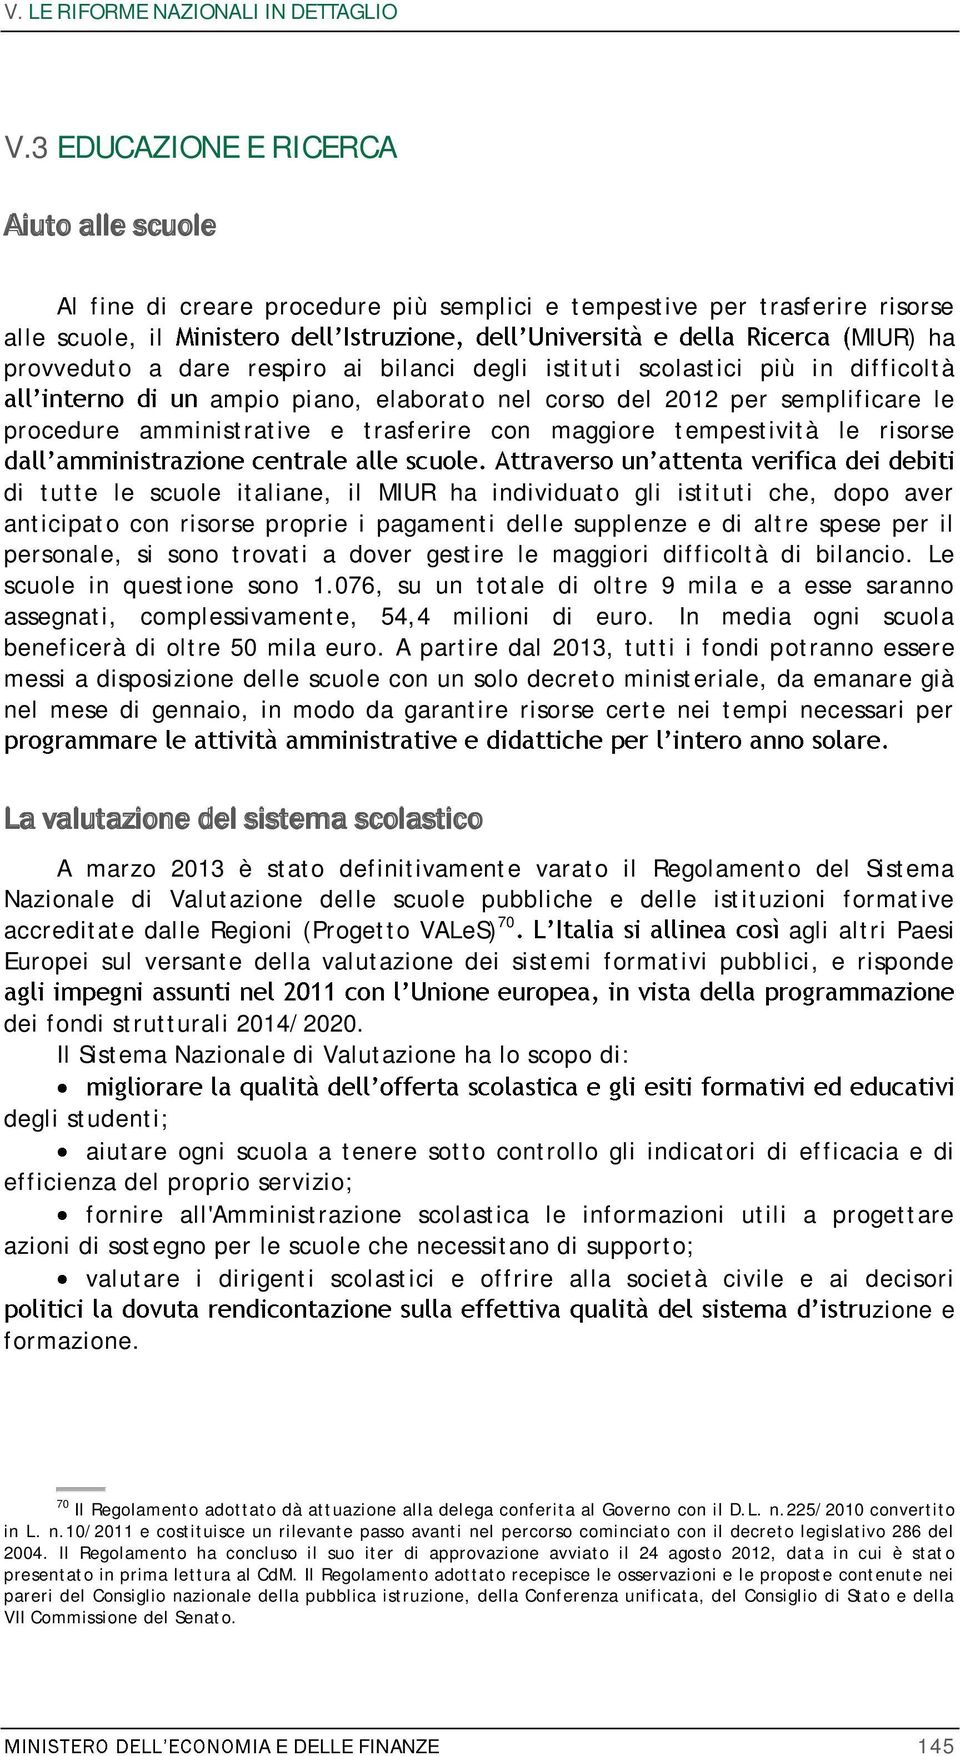 scolastici più in difficoltà ampio piano, elaborato nel corso del 2012 per semplificare le procedure amministrative e trasferire con maggiore tempestività le risorse di tutte le scuole italiane, il